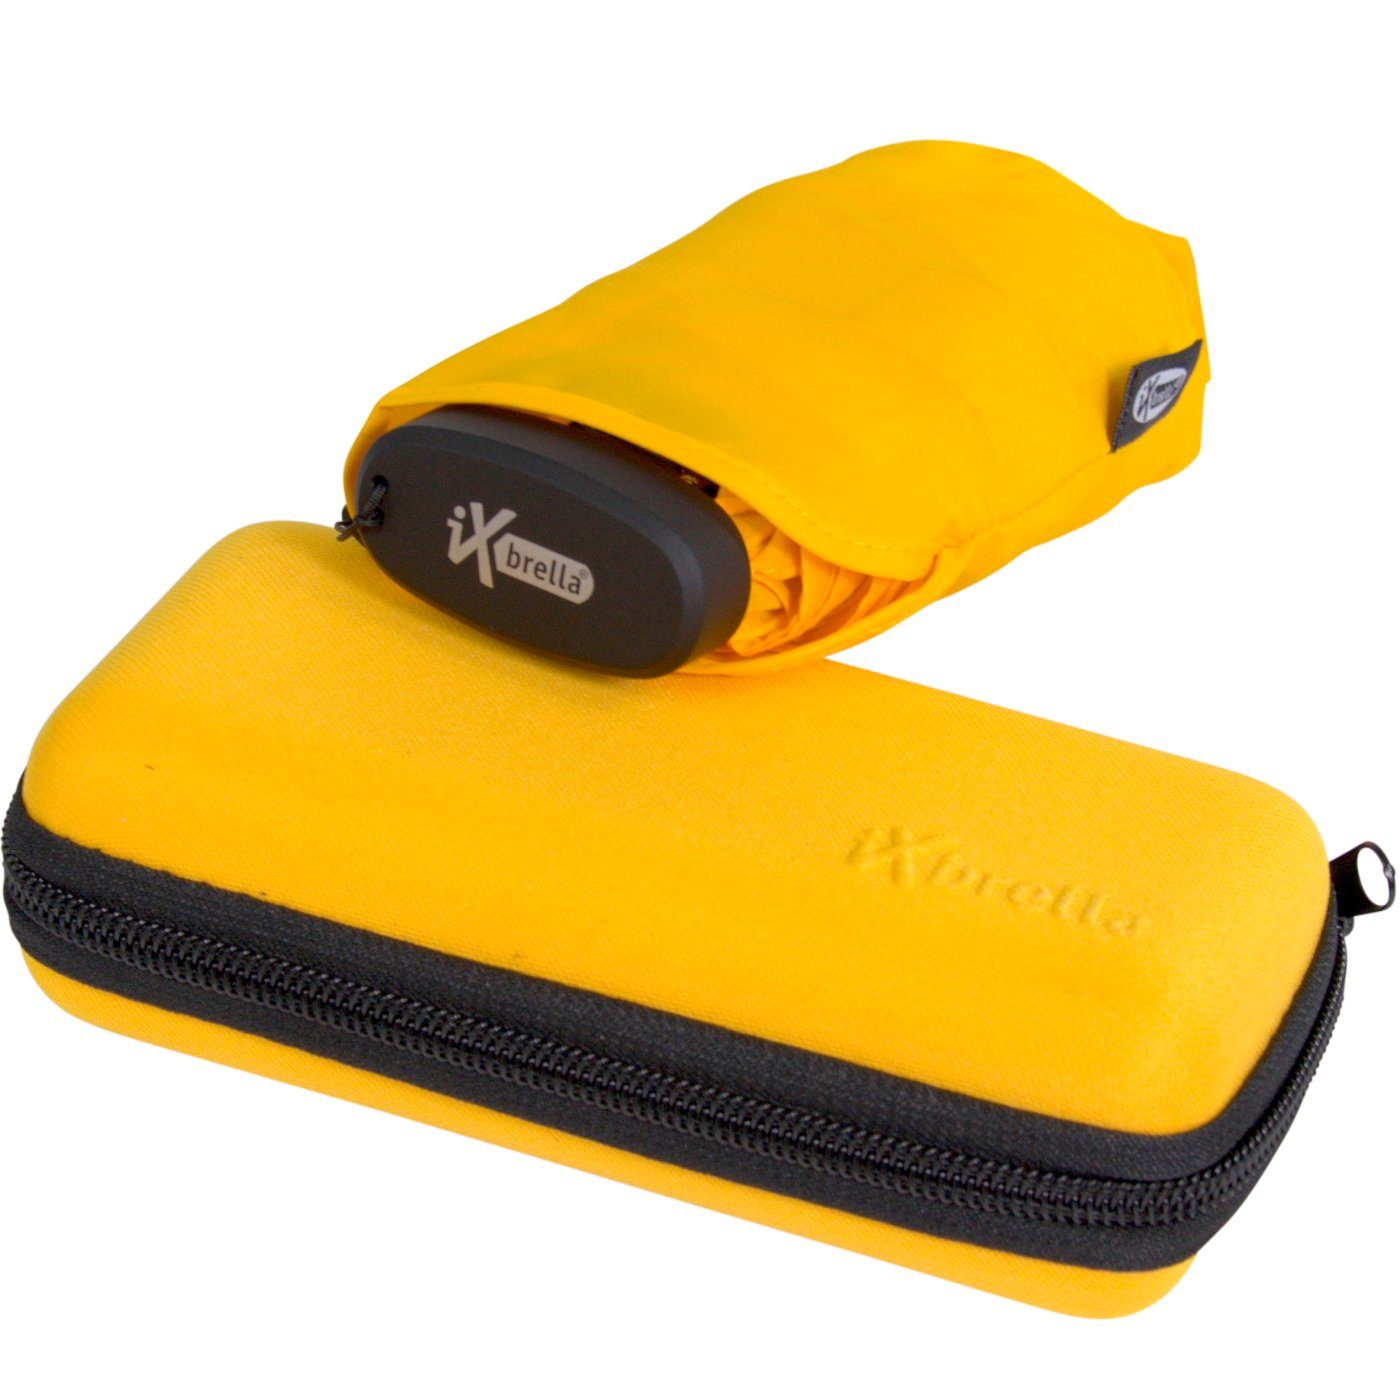 iX-brella Taschenregenschirm Ultra Mini 15 cm winziger Schirm im Handy Format, ultra-klein, mit Softcase-Etui, gold fusion yellow gelb